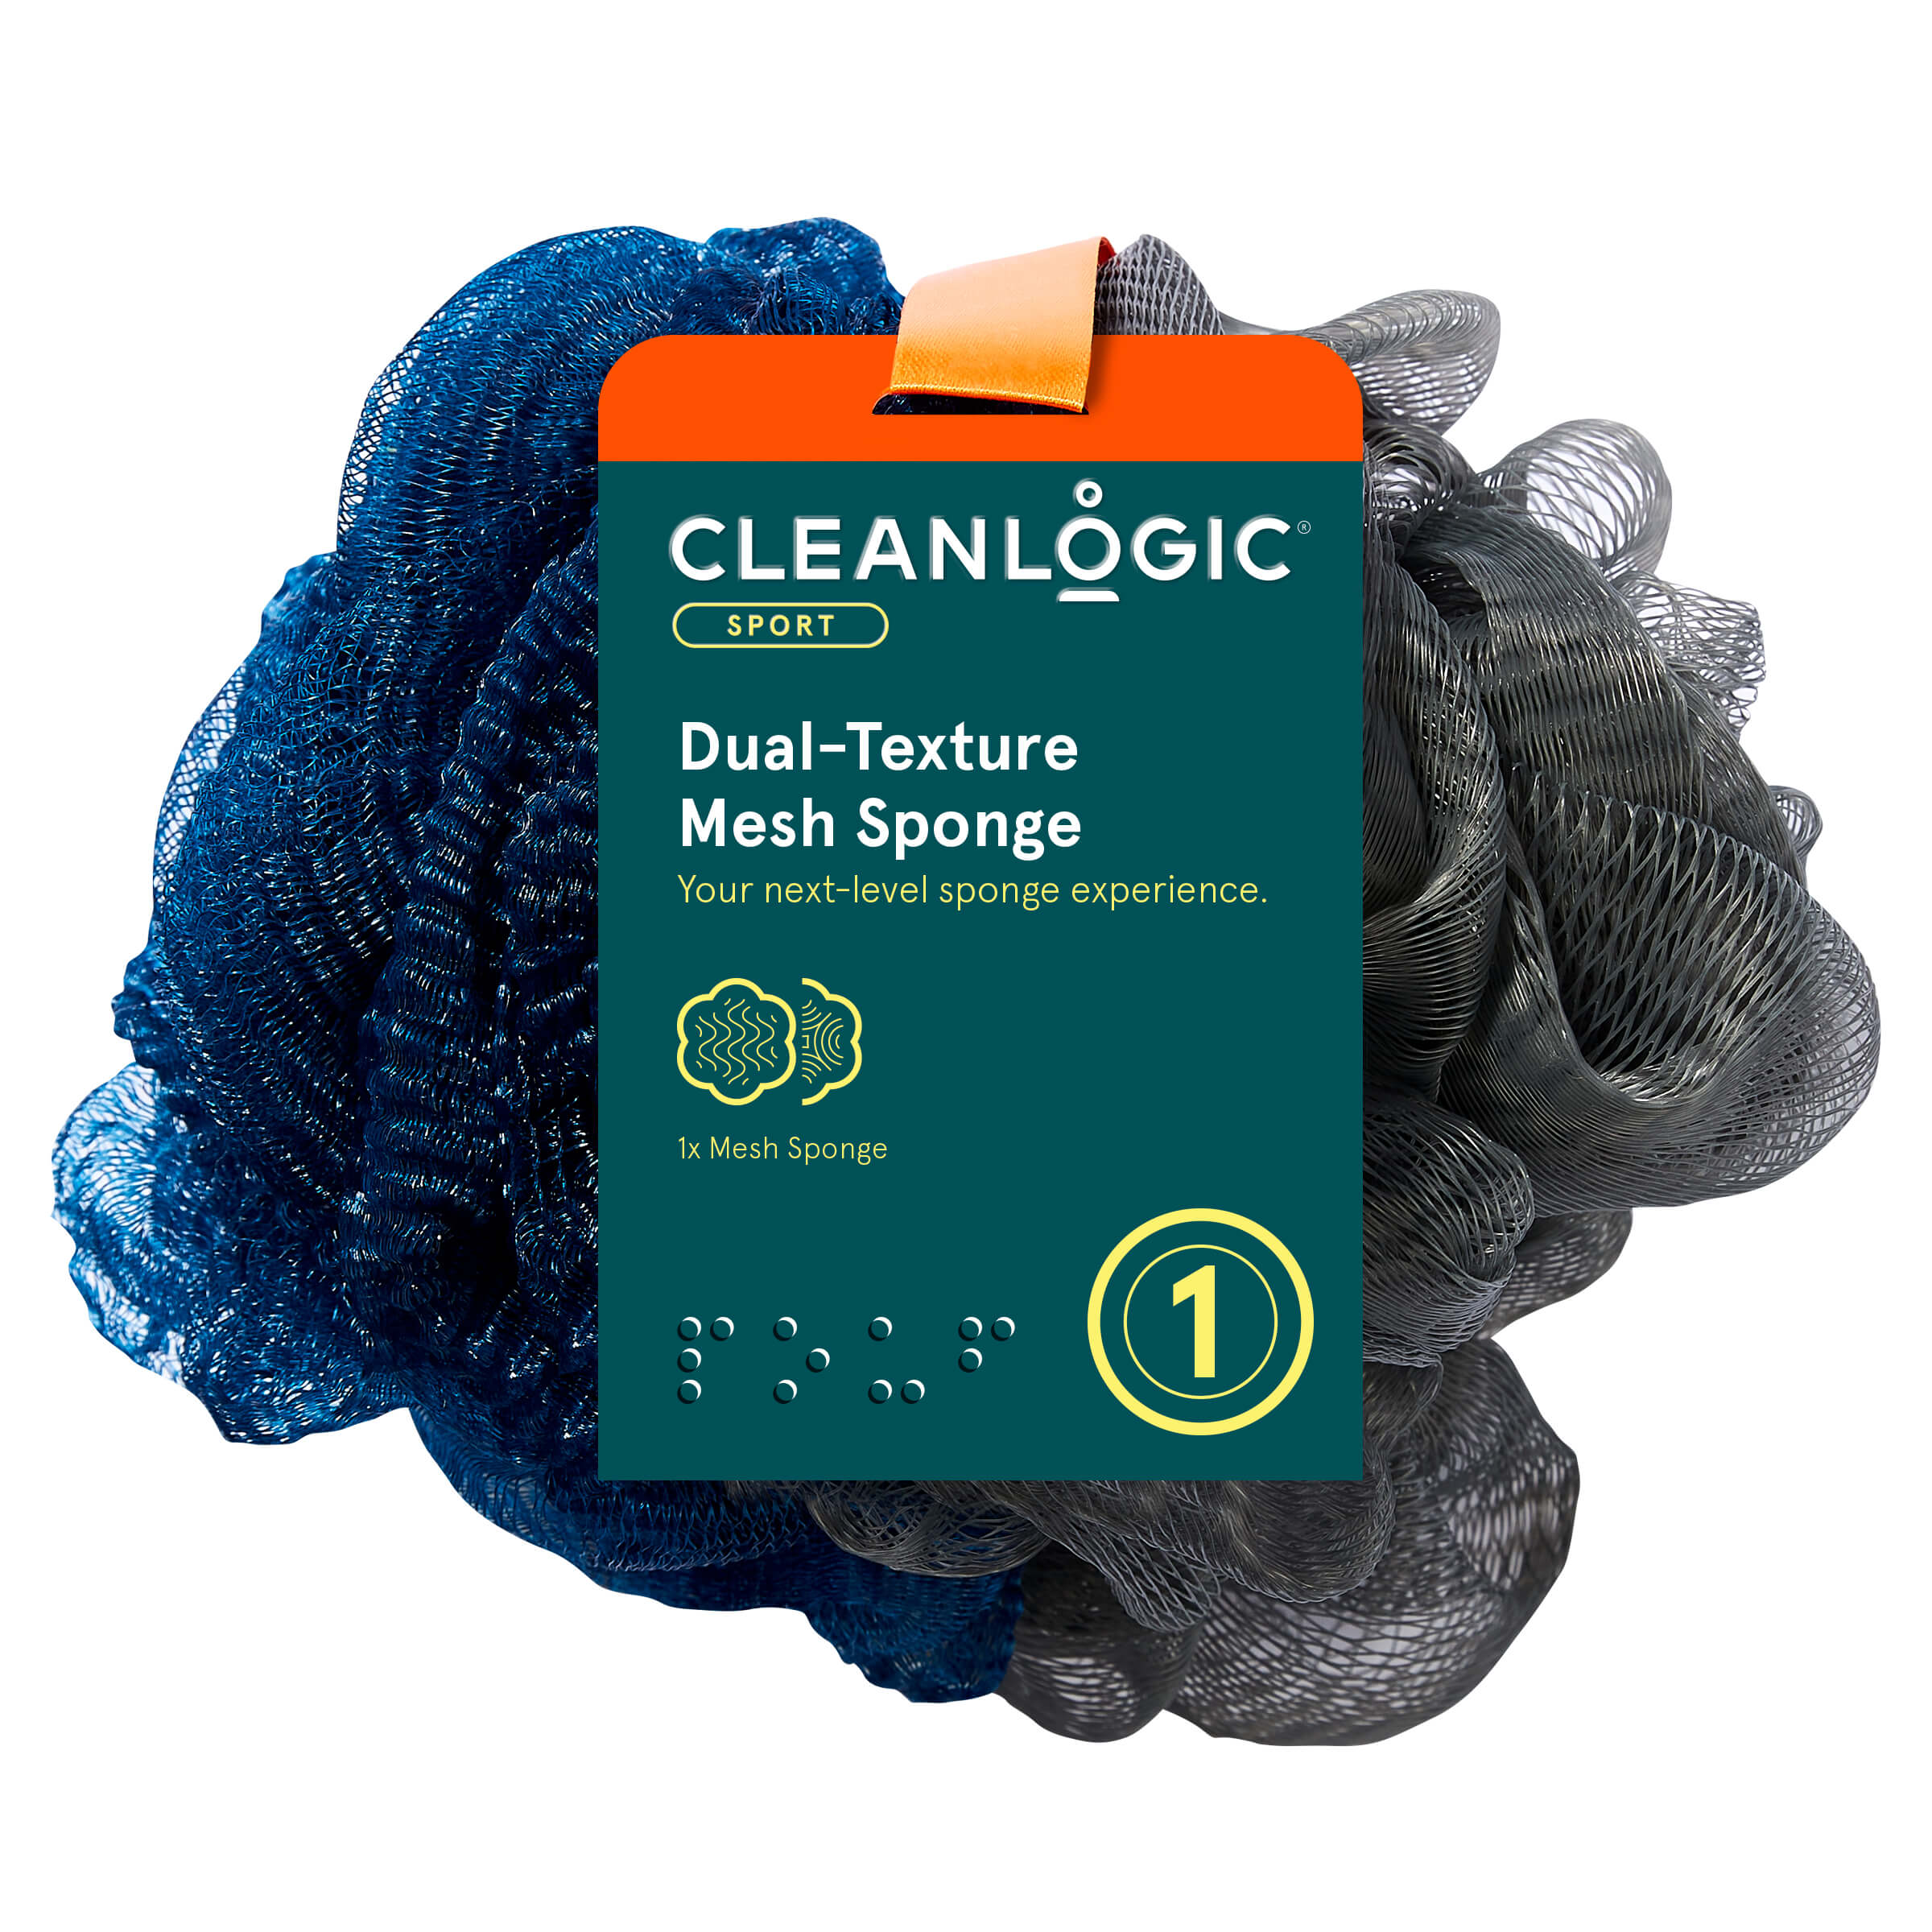 Cleanlogic Sport Dual-Texture Mesh Sponge 70g